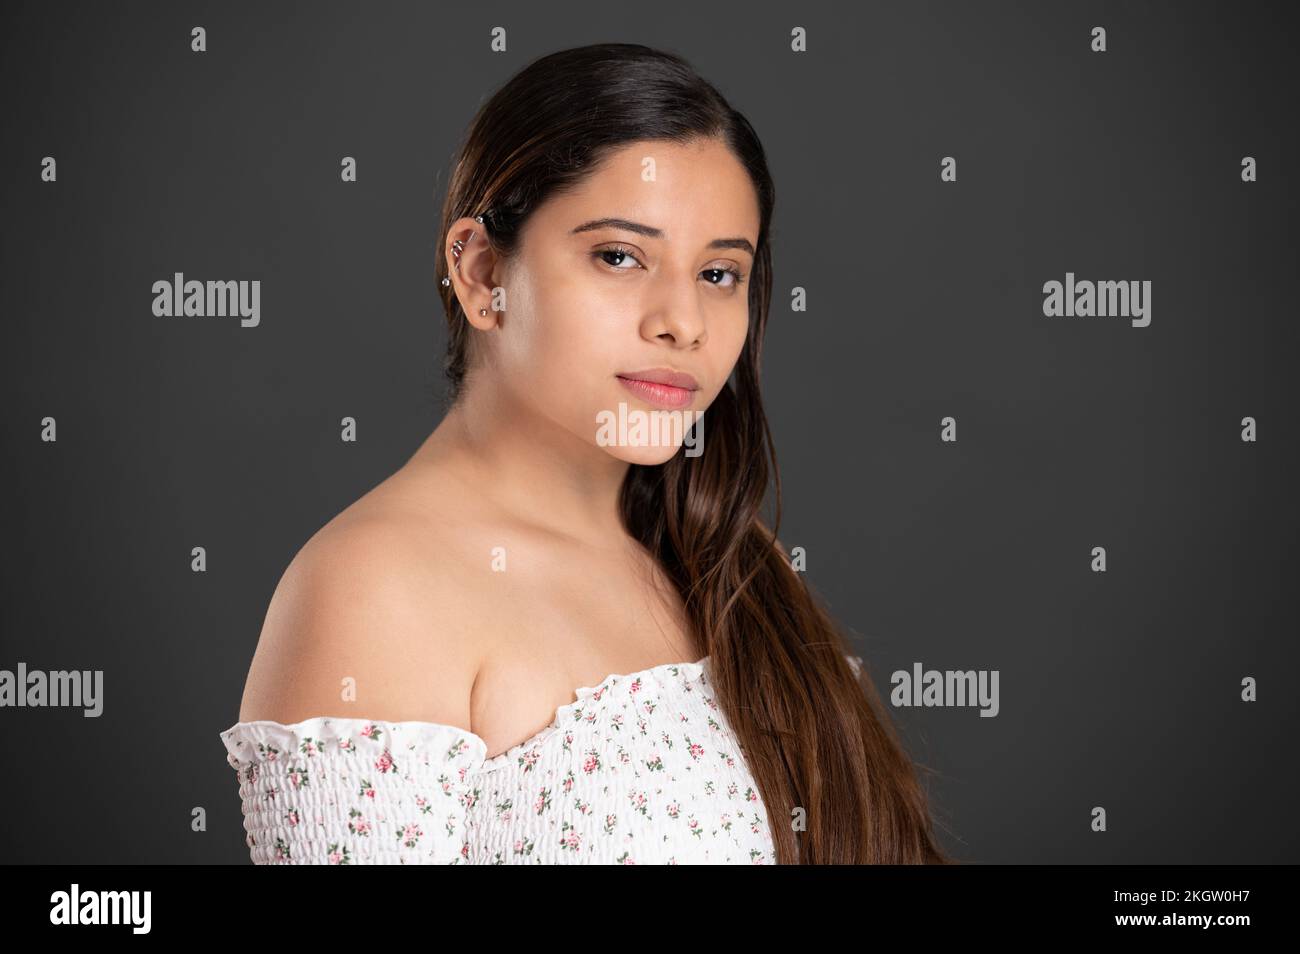 Ritratto di ragazza latina con piercing in orecchio su sfondo scuro studio Foto Stock